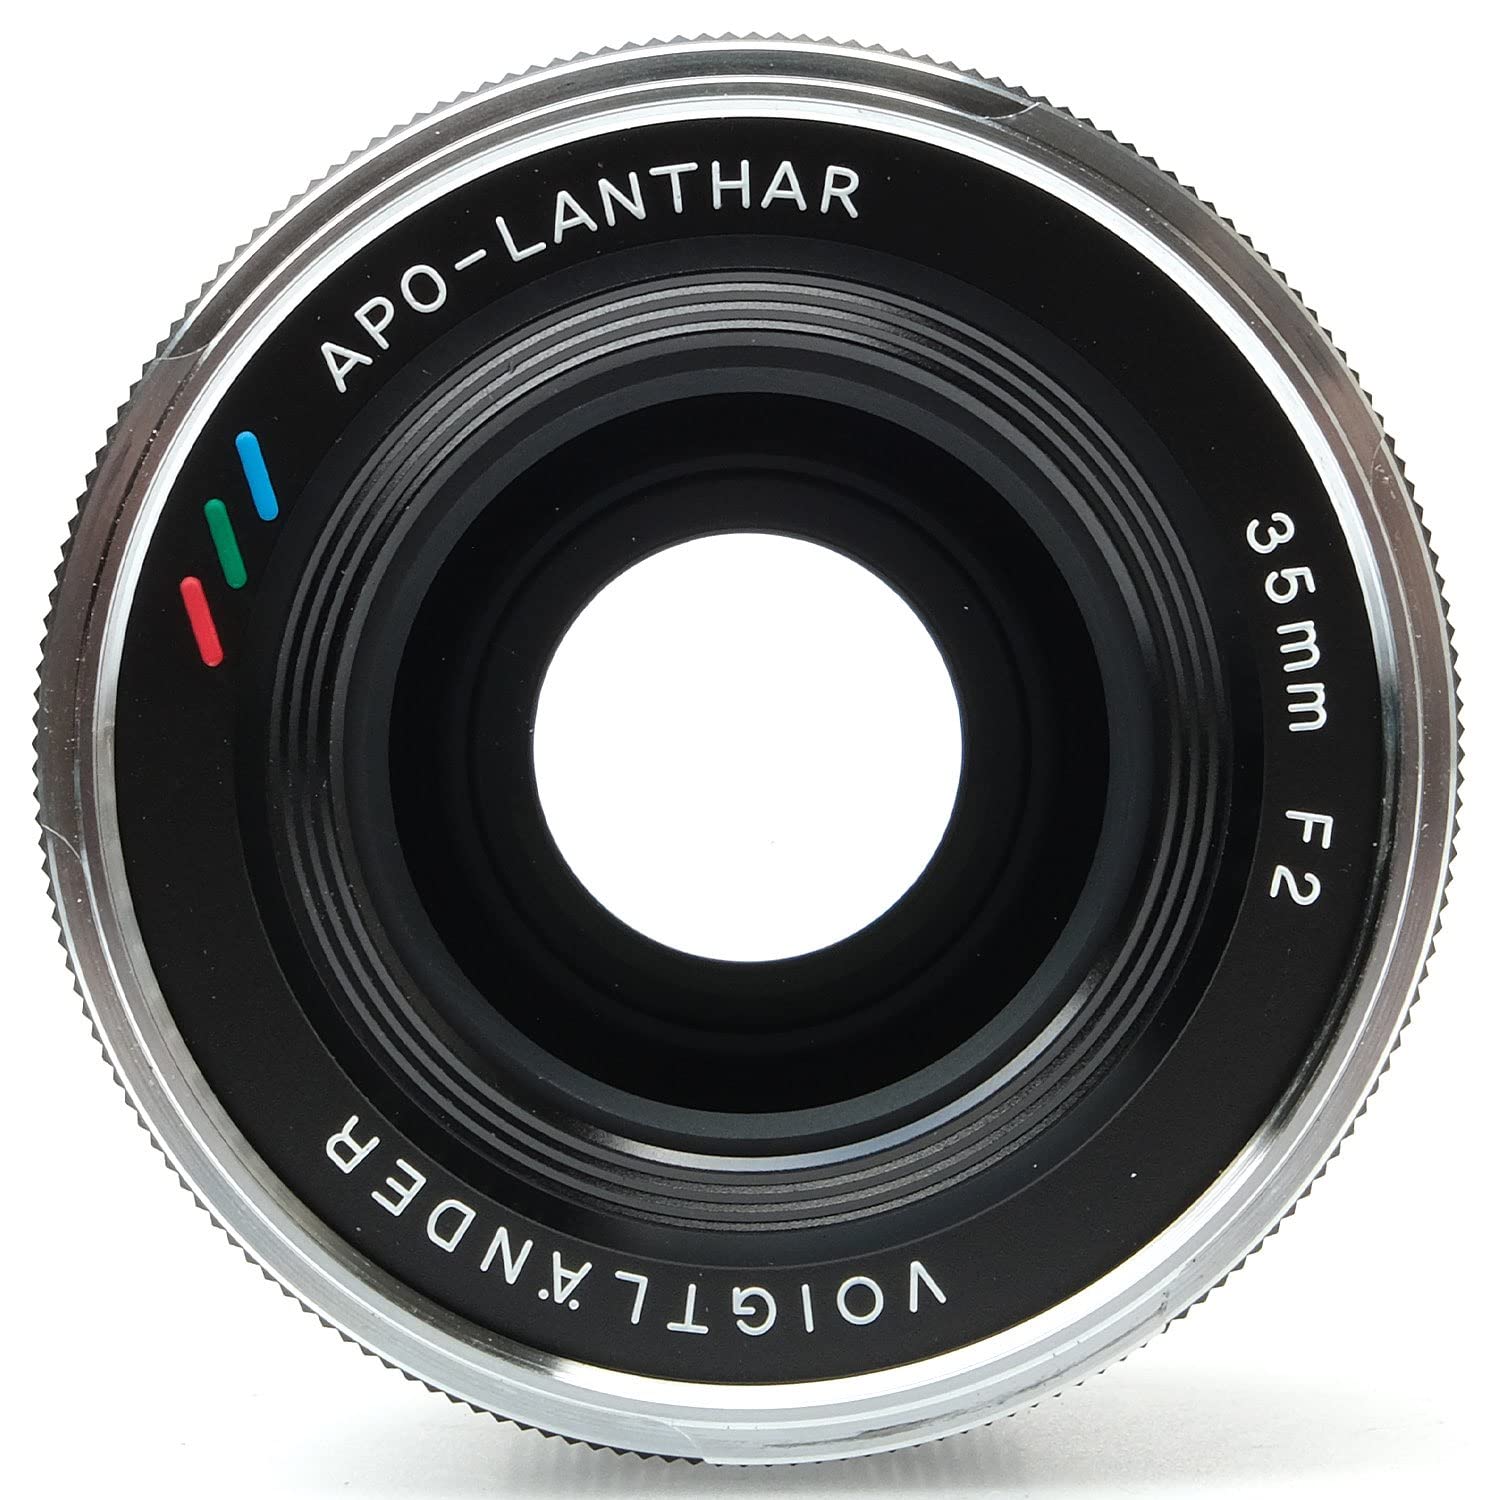 Voigtlander 35mm f/2.0 APO-Lanthar Aspherical VM Lens for Leica M